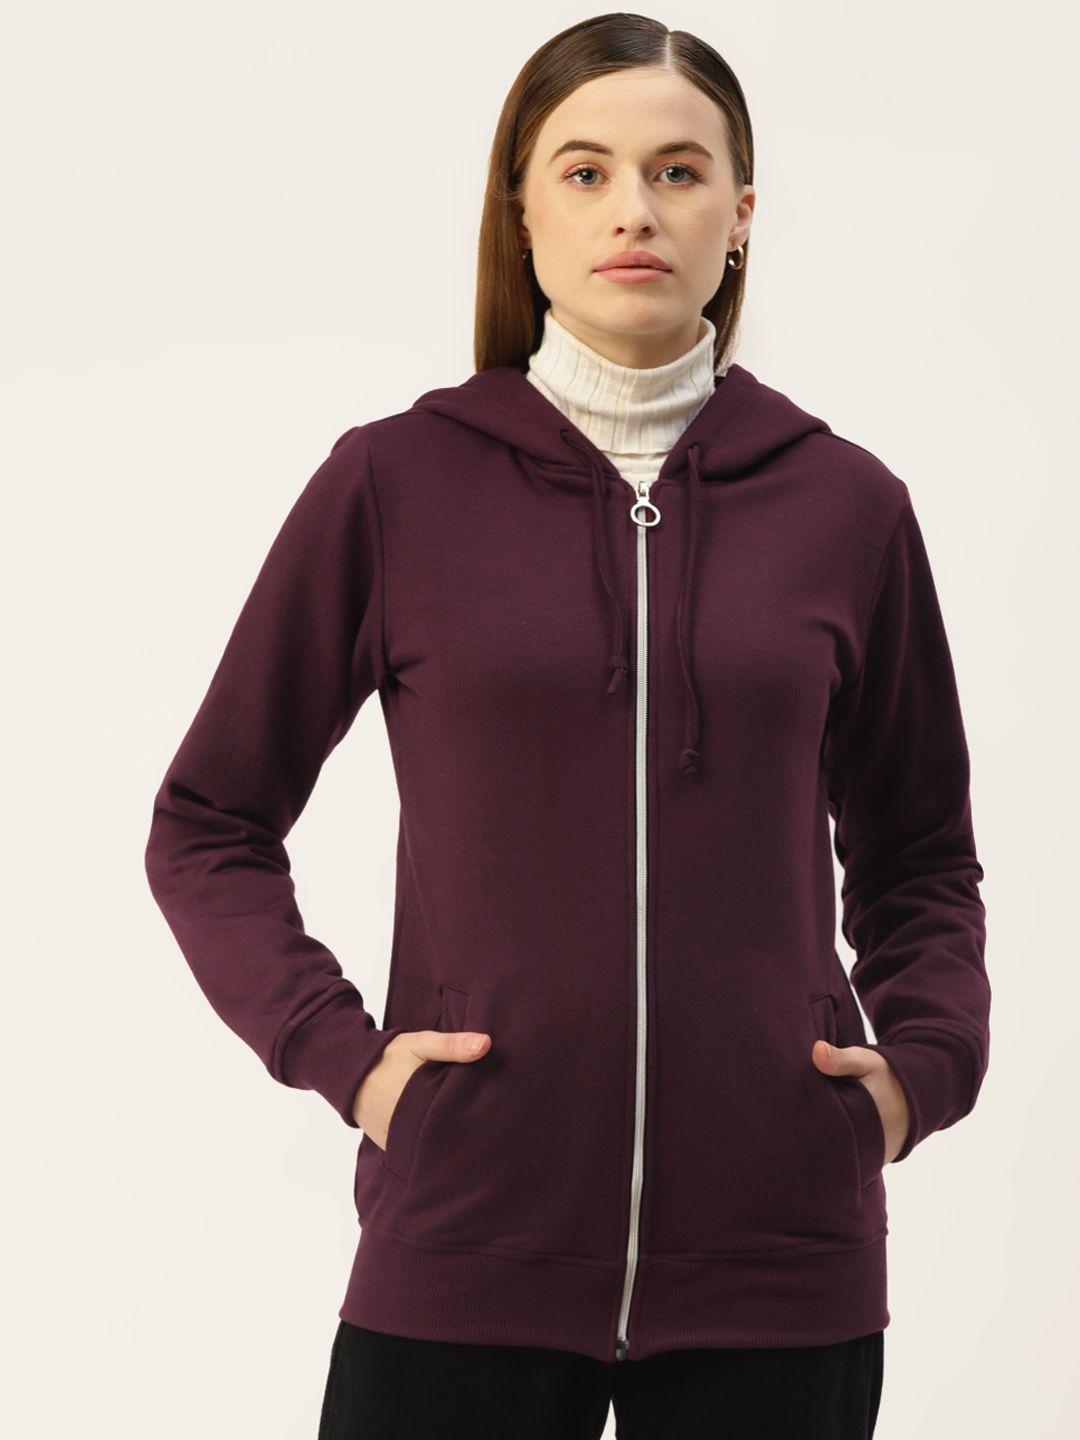 brinns women burgundy solid hooded sweatshirt